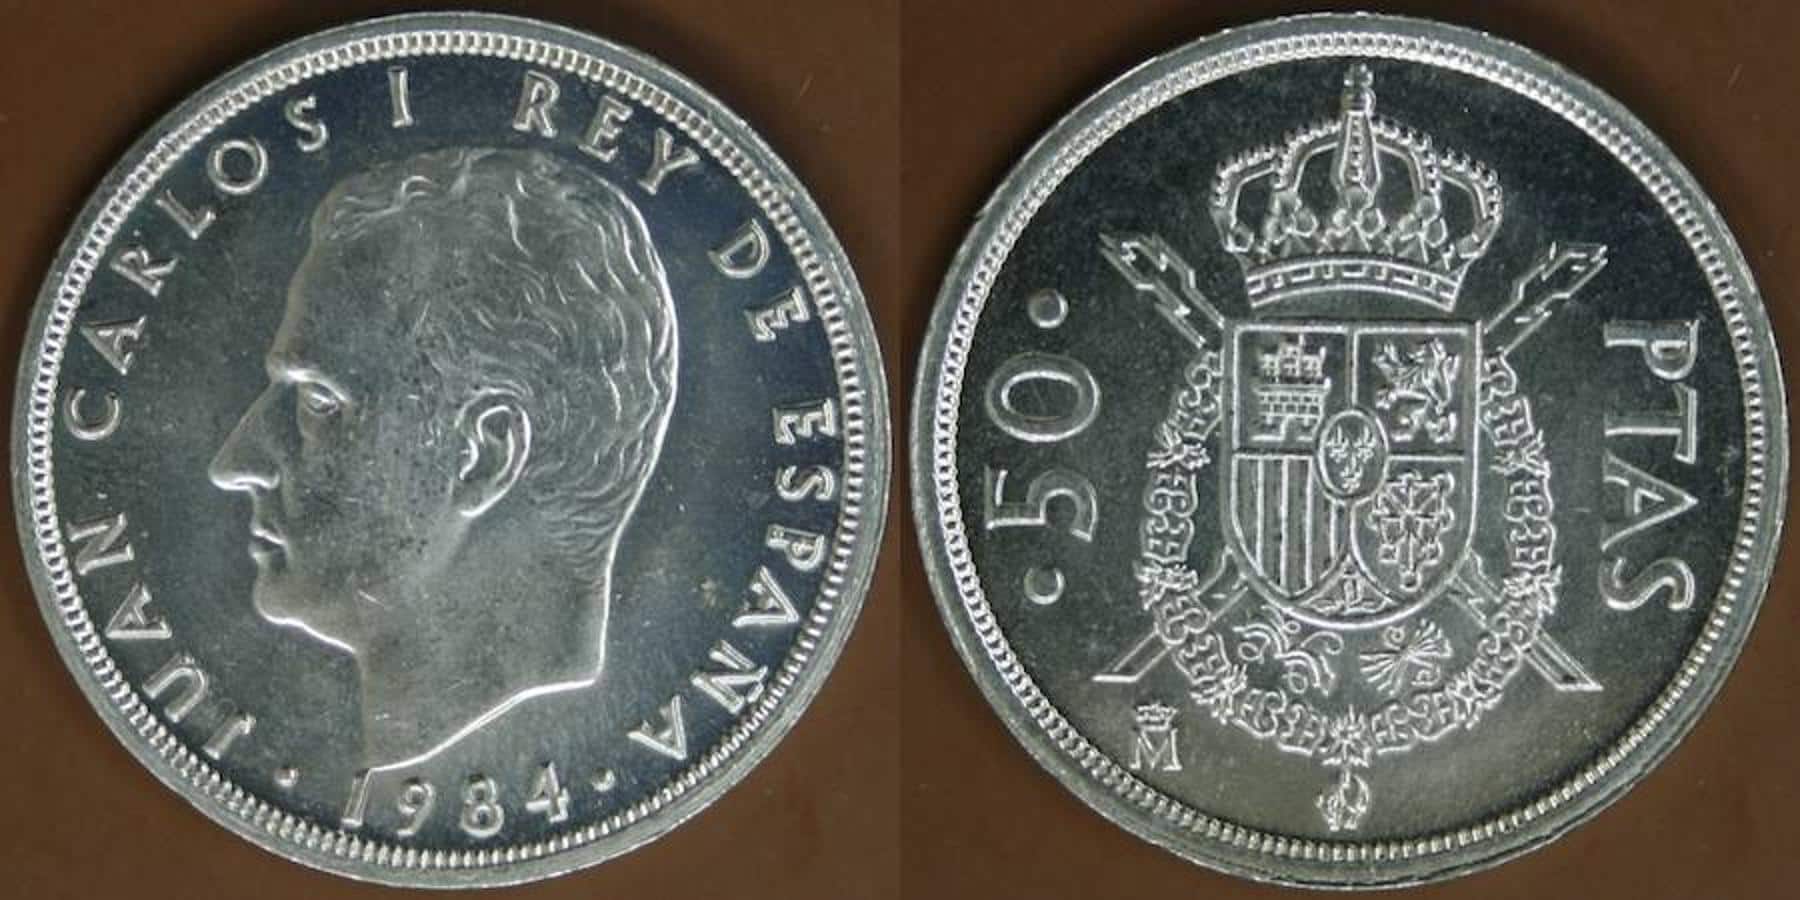 50 Pesetas 1984. Antes de que se estableciera el nuevo sistema monetario en 1990, circulaban enormes monedas de 50 pesetas, que ya alcanzan el valor de 60 o 70 euros.